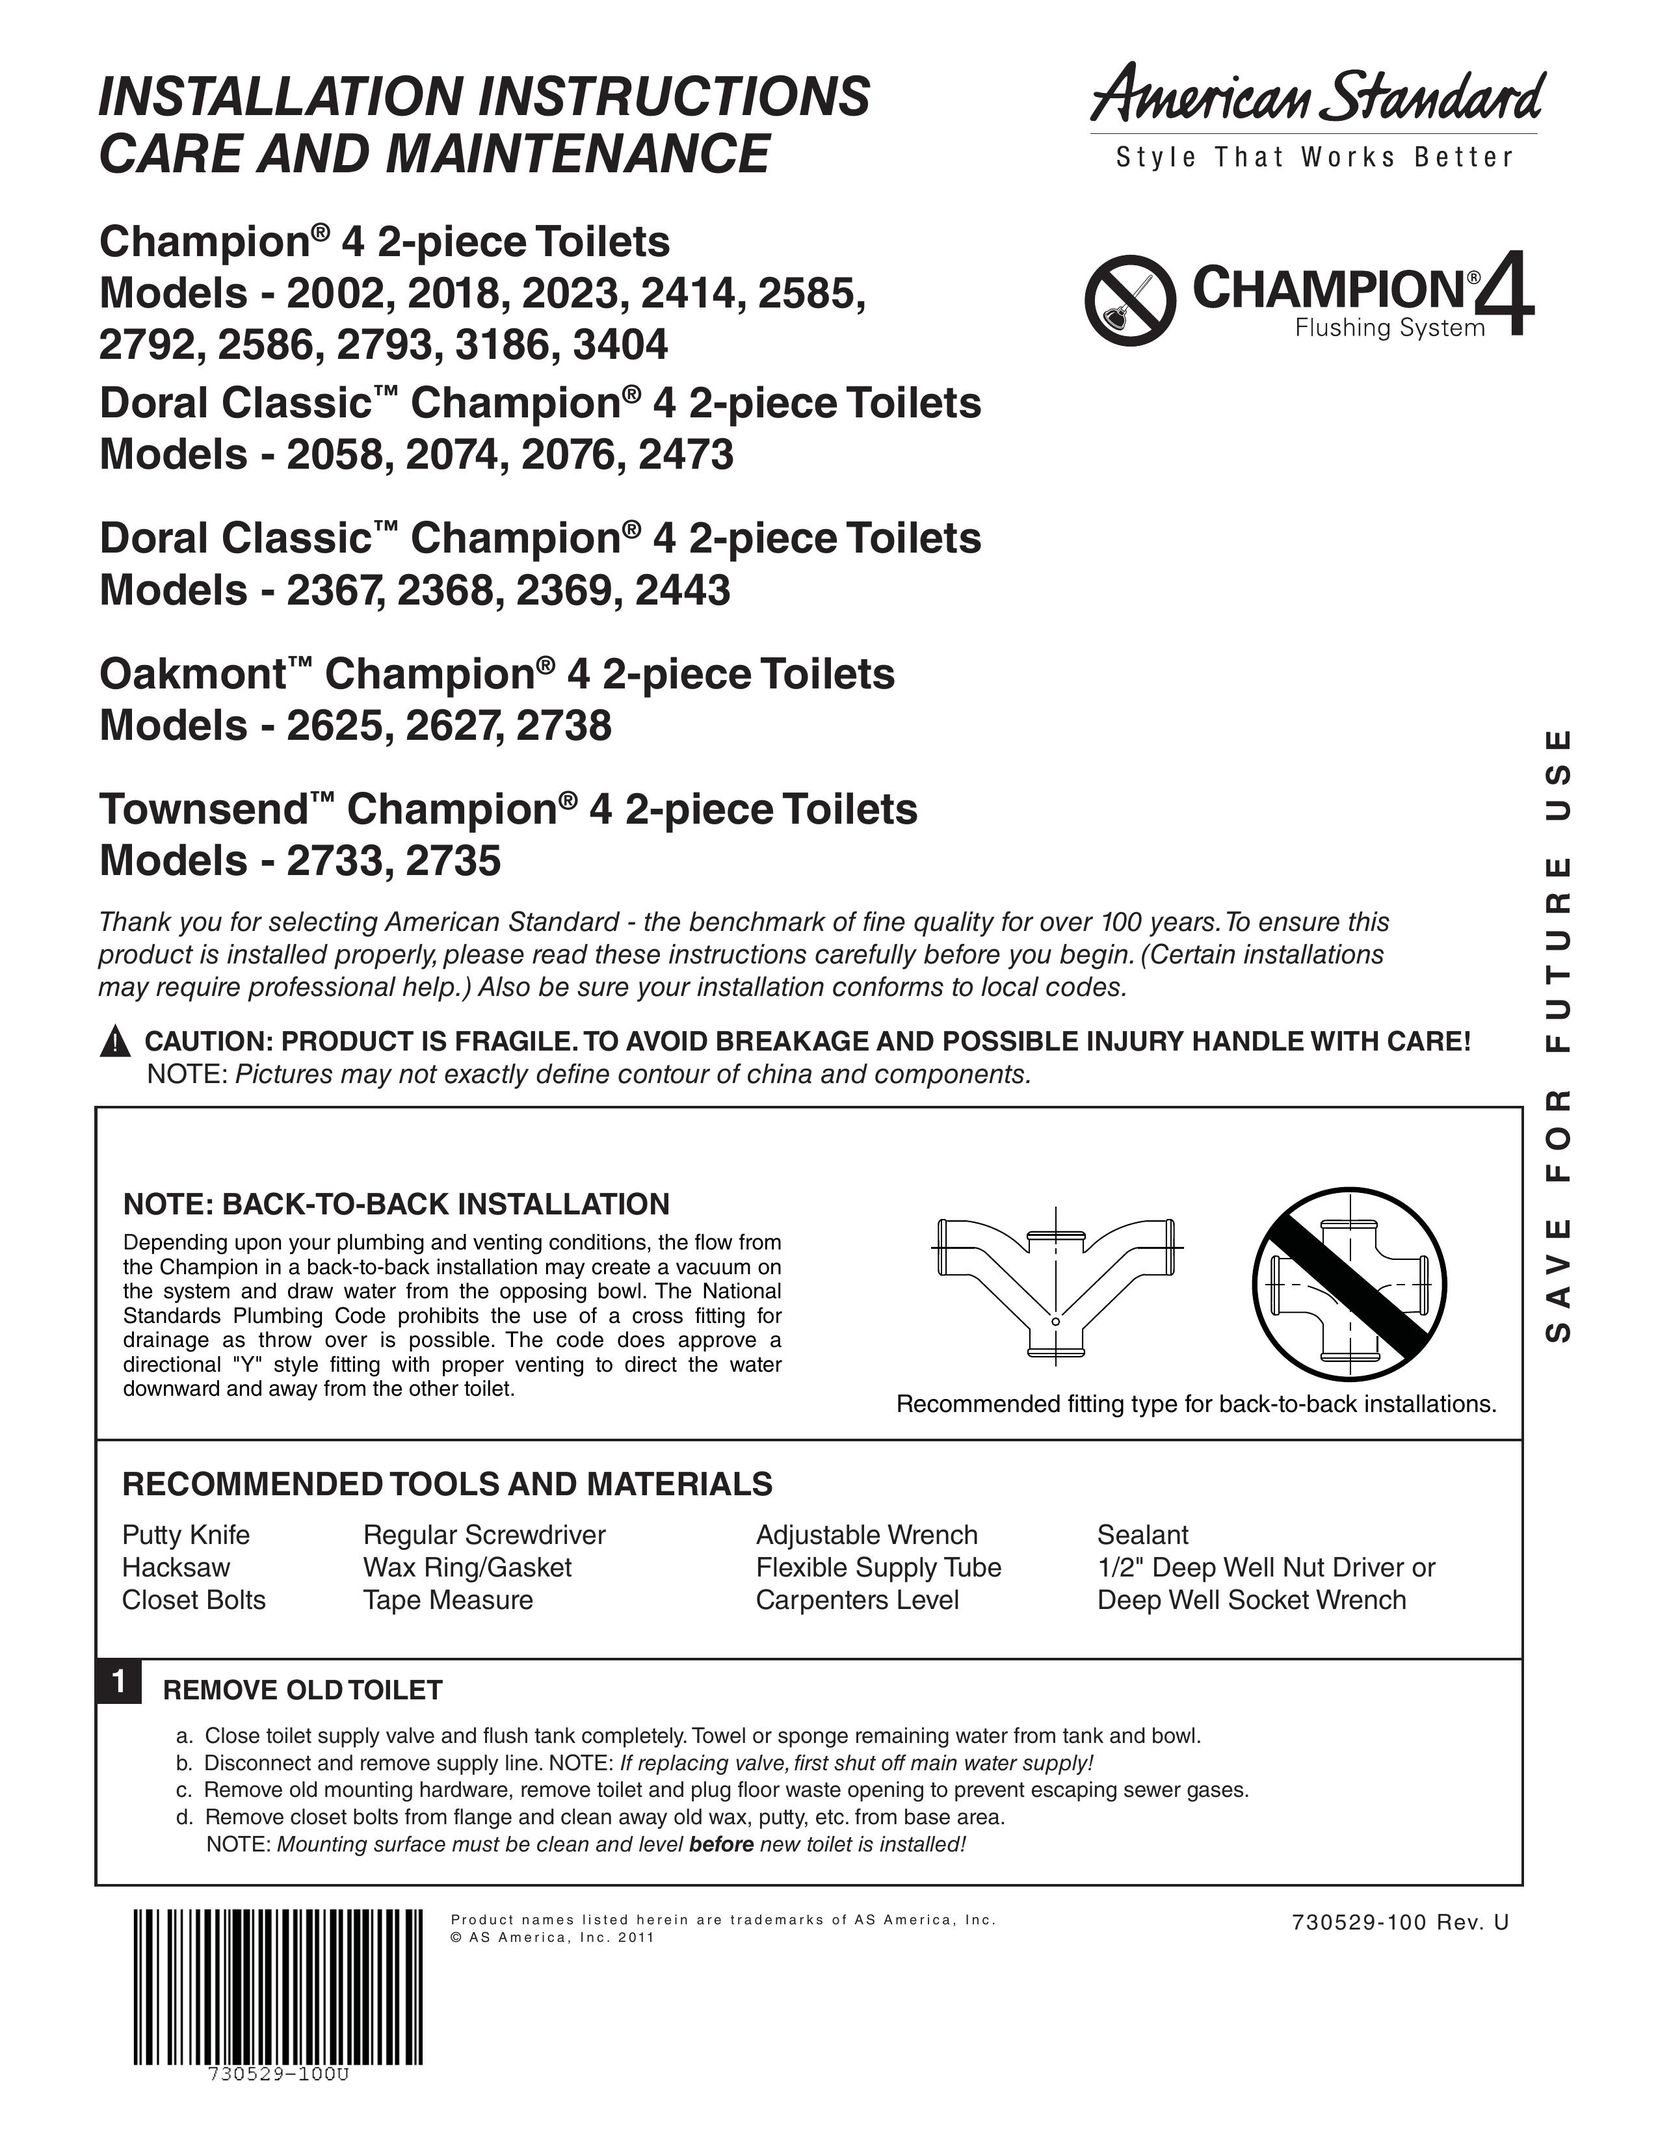 American Standard 2074 Plumbing Product User Manual